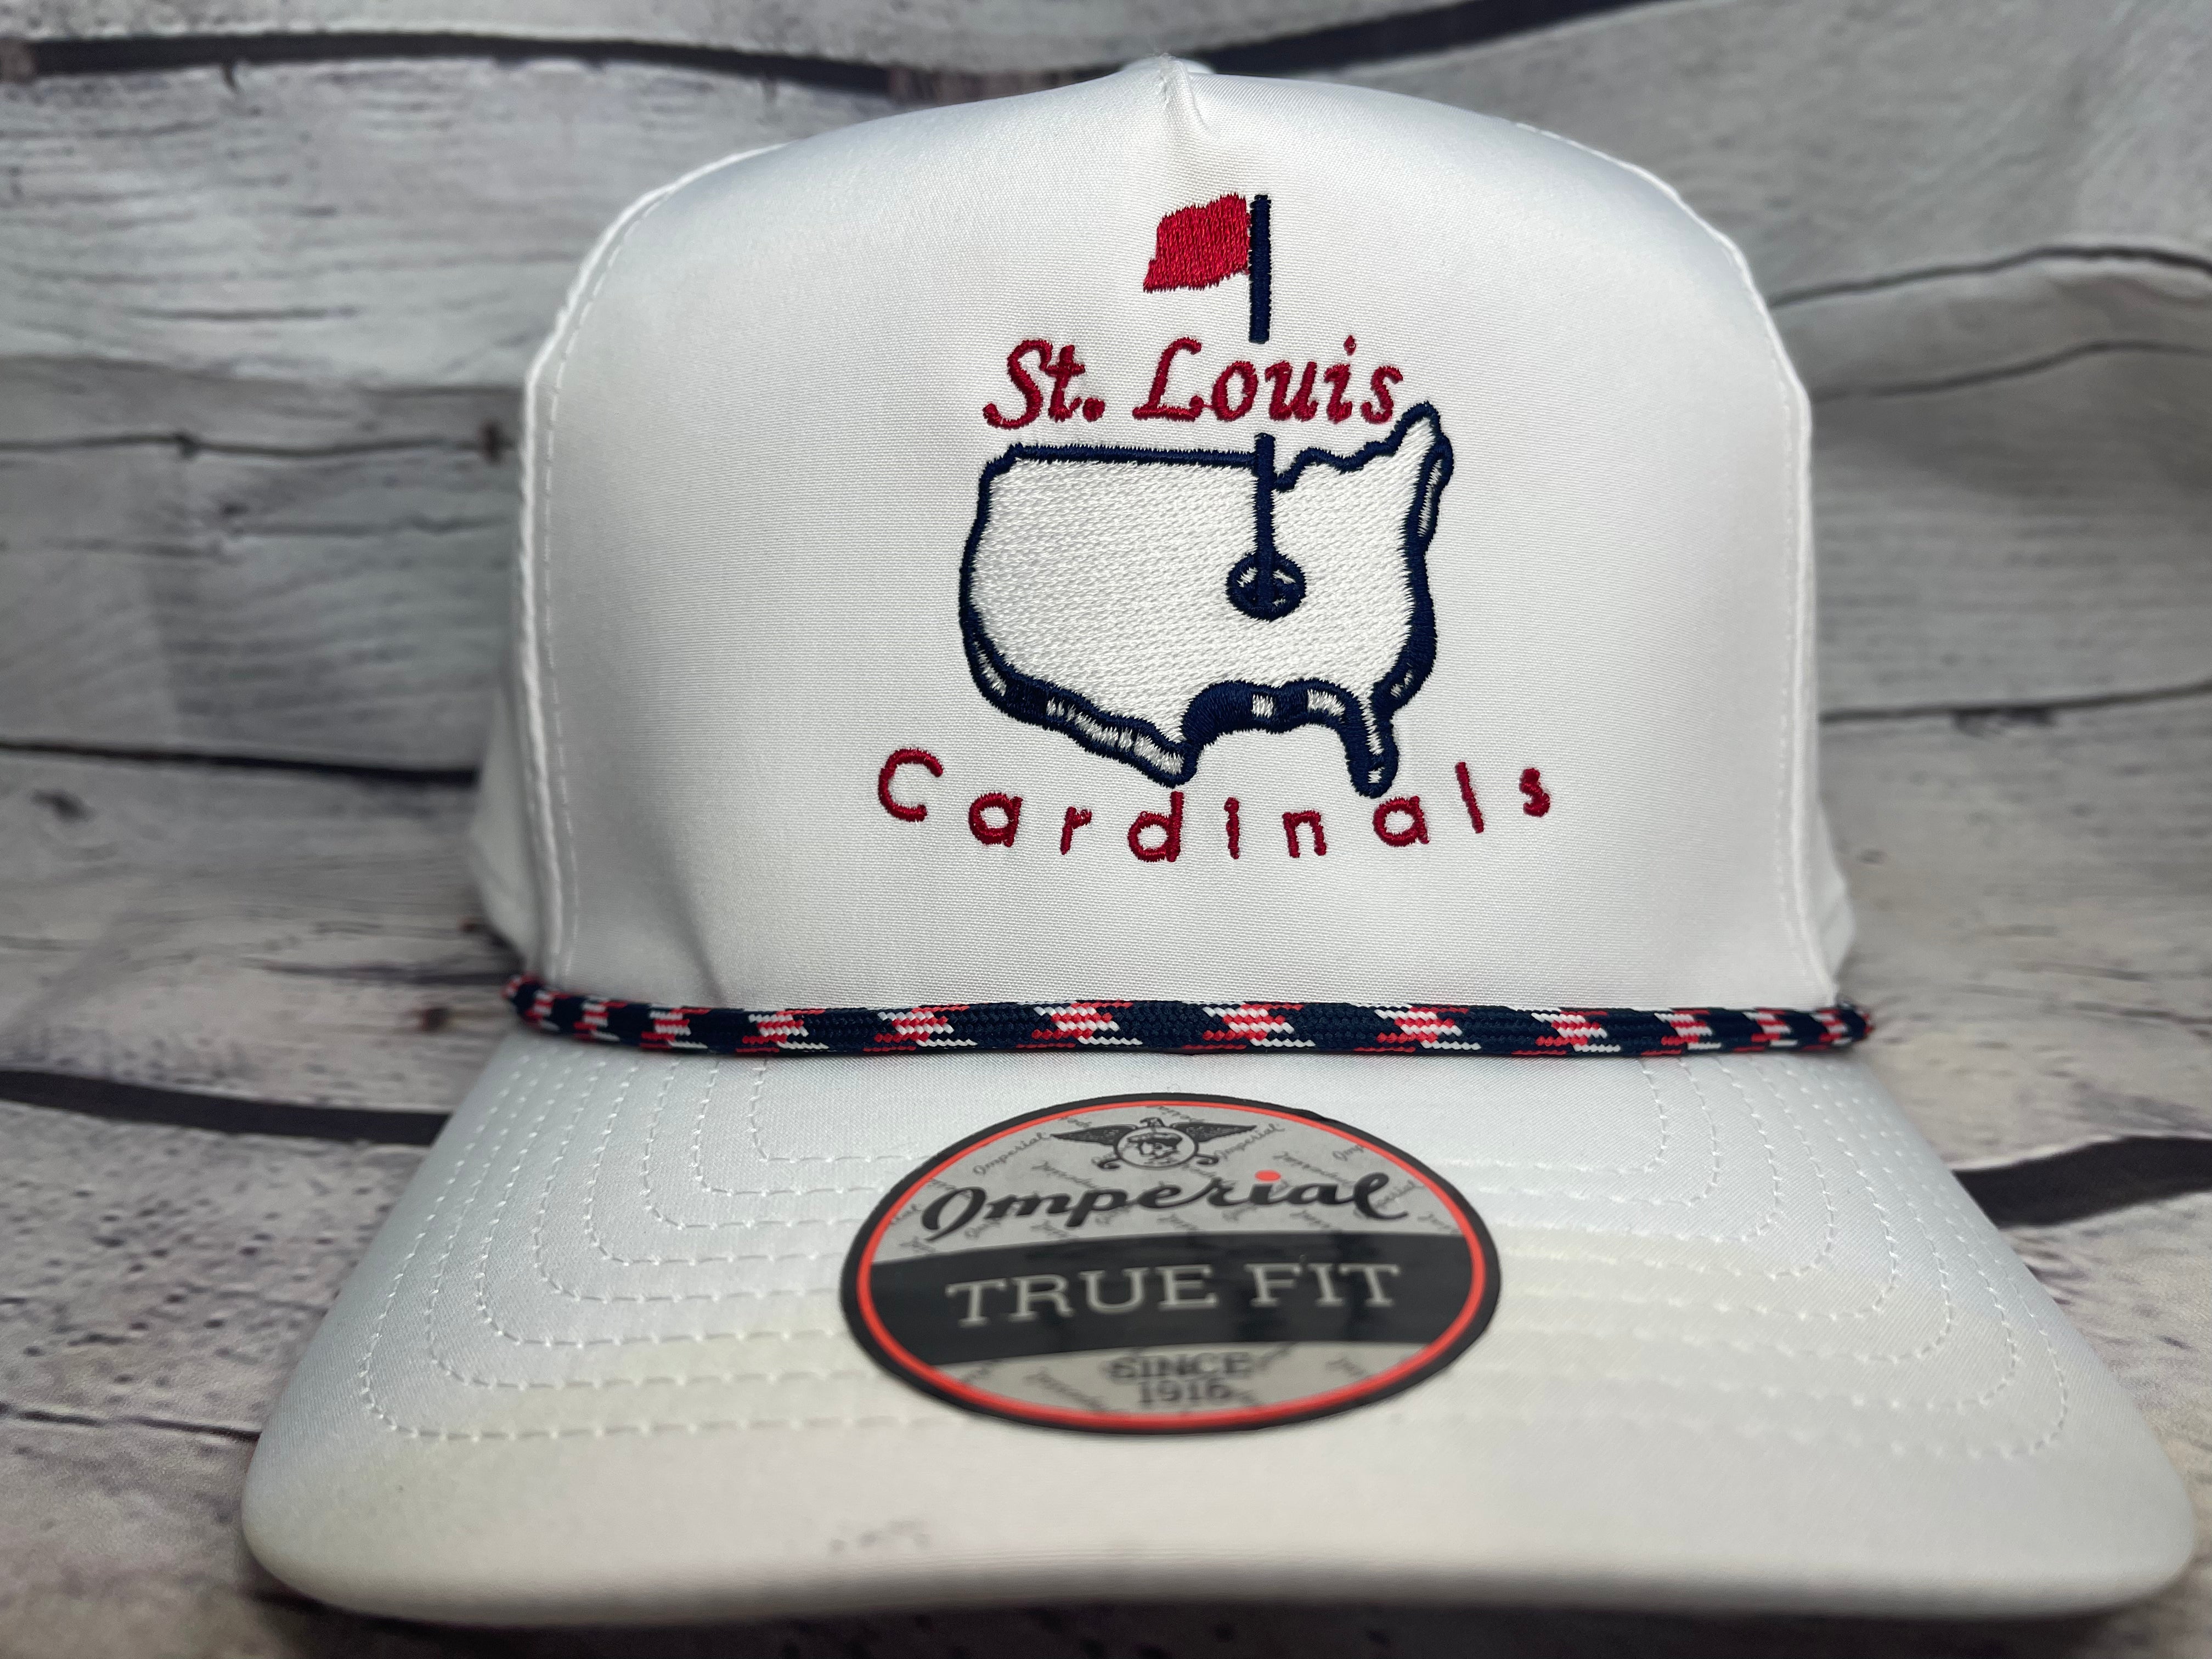 St. Louis Cardinals Caps